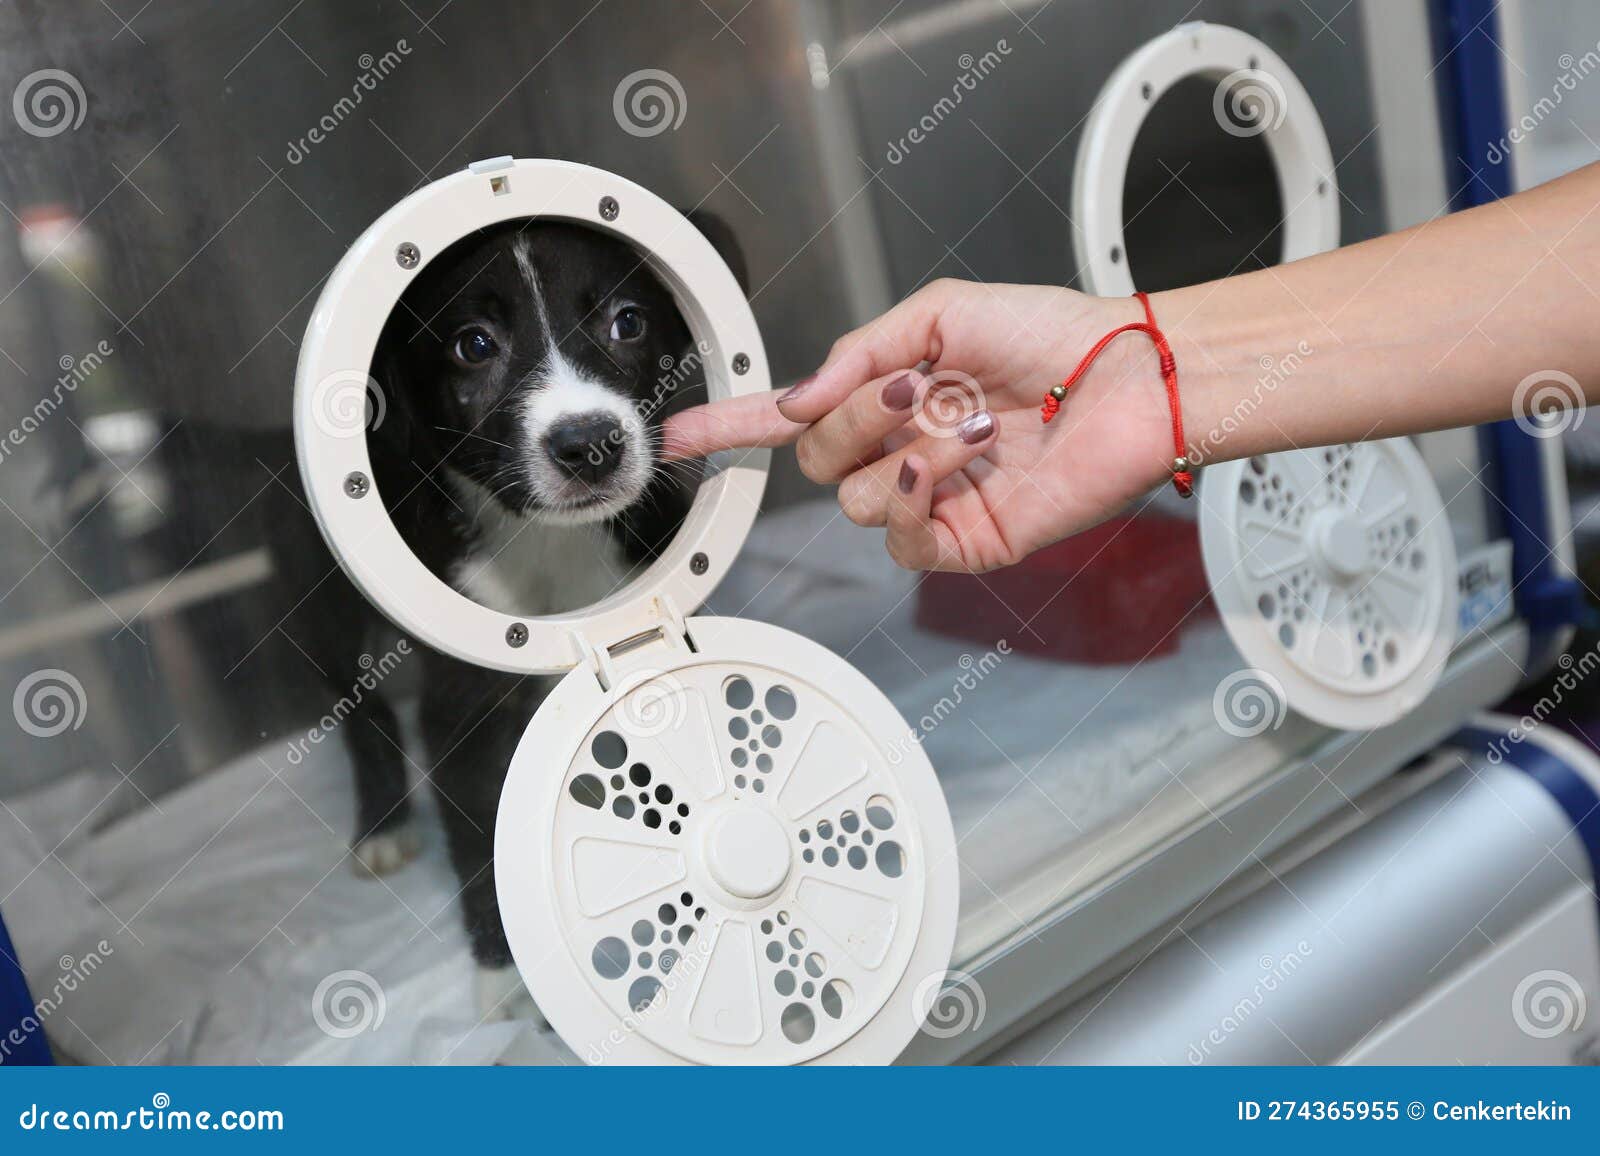 sick puppy in an incubator